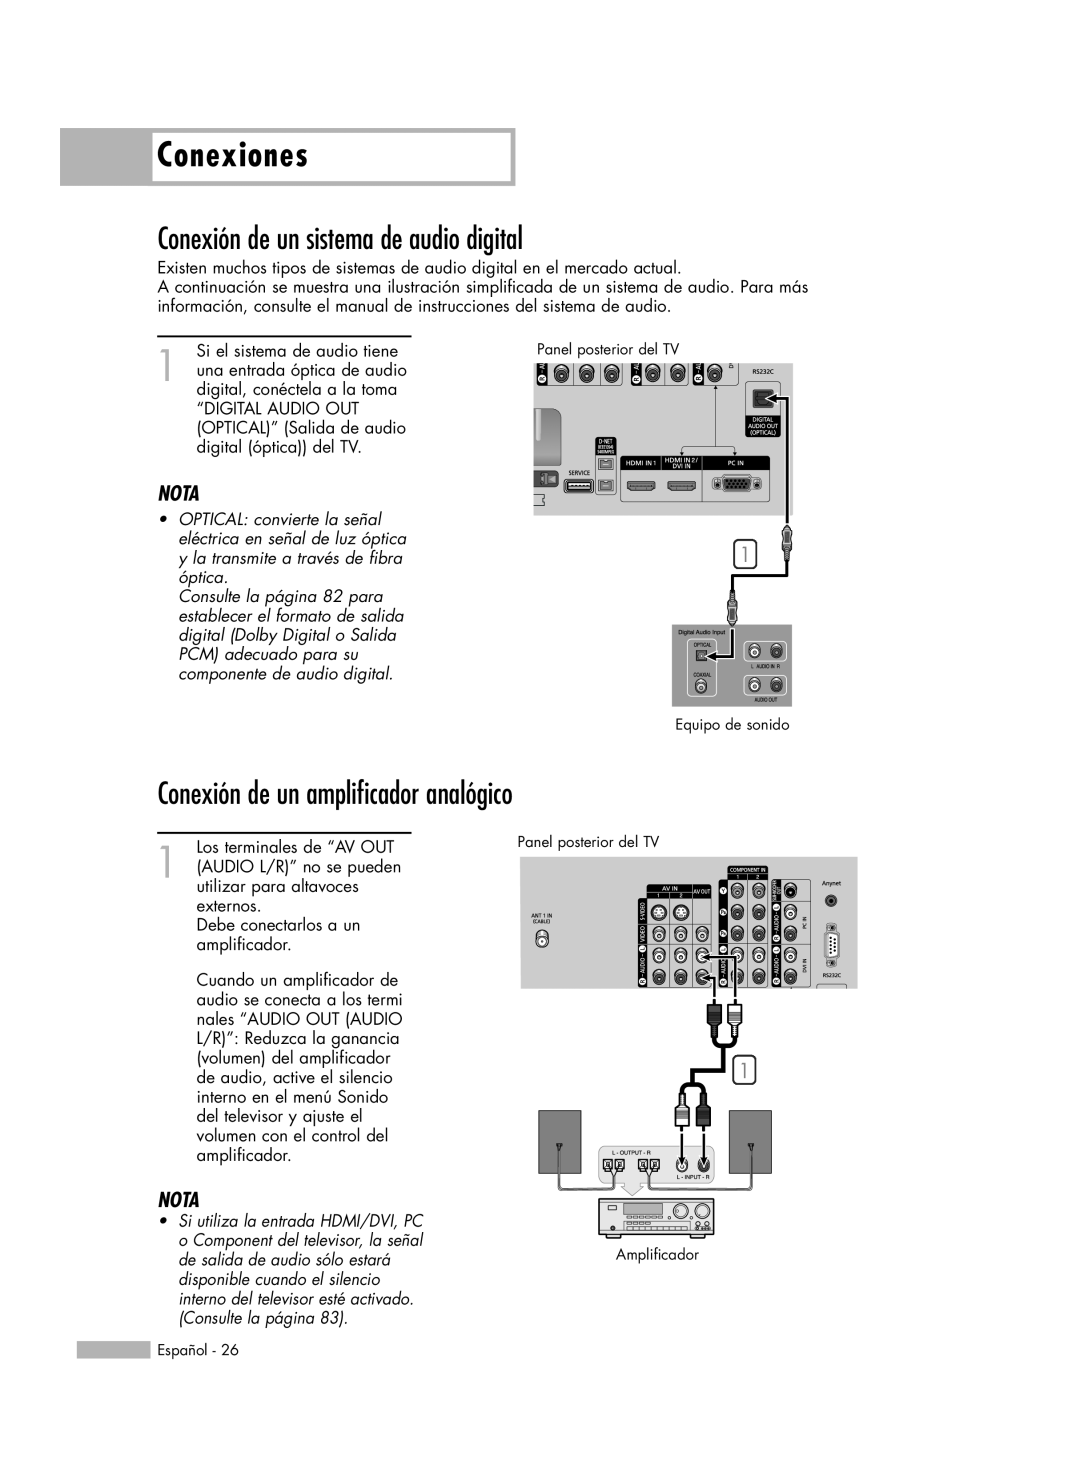 Samsung HL-R5678W manual Conexión de un sistema de audio digital, Conexión de un amplificador analógico, Conexiones, Nota 